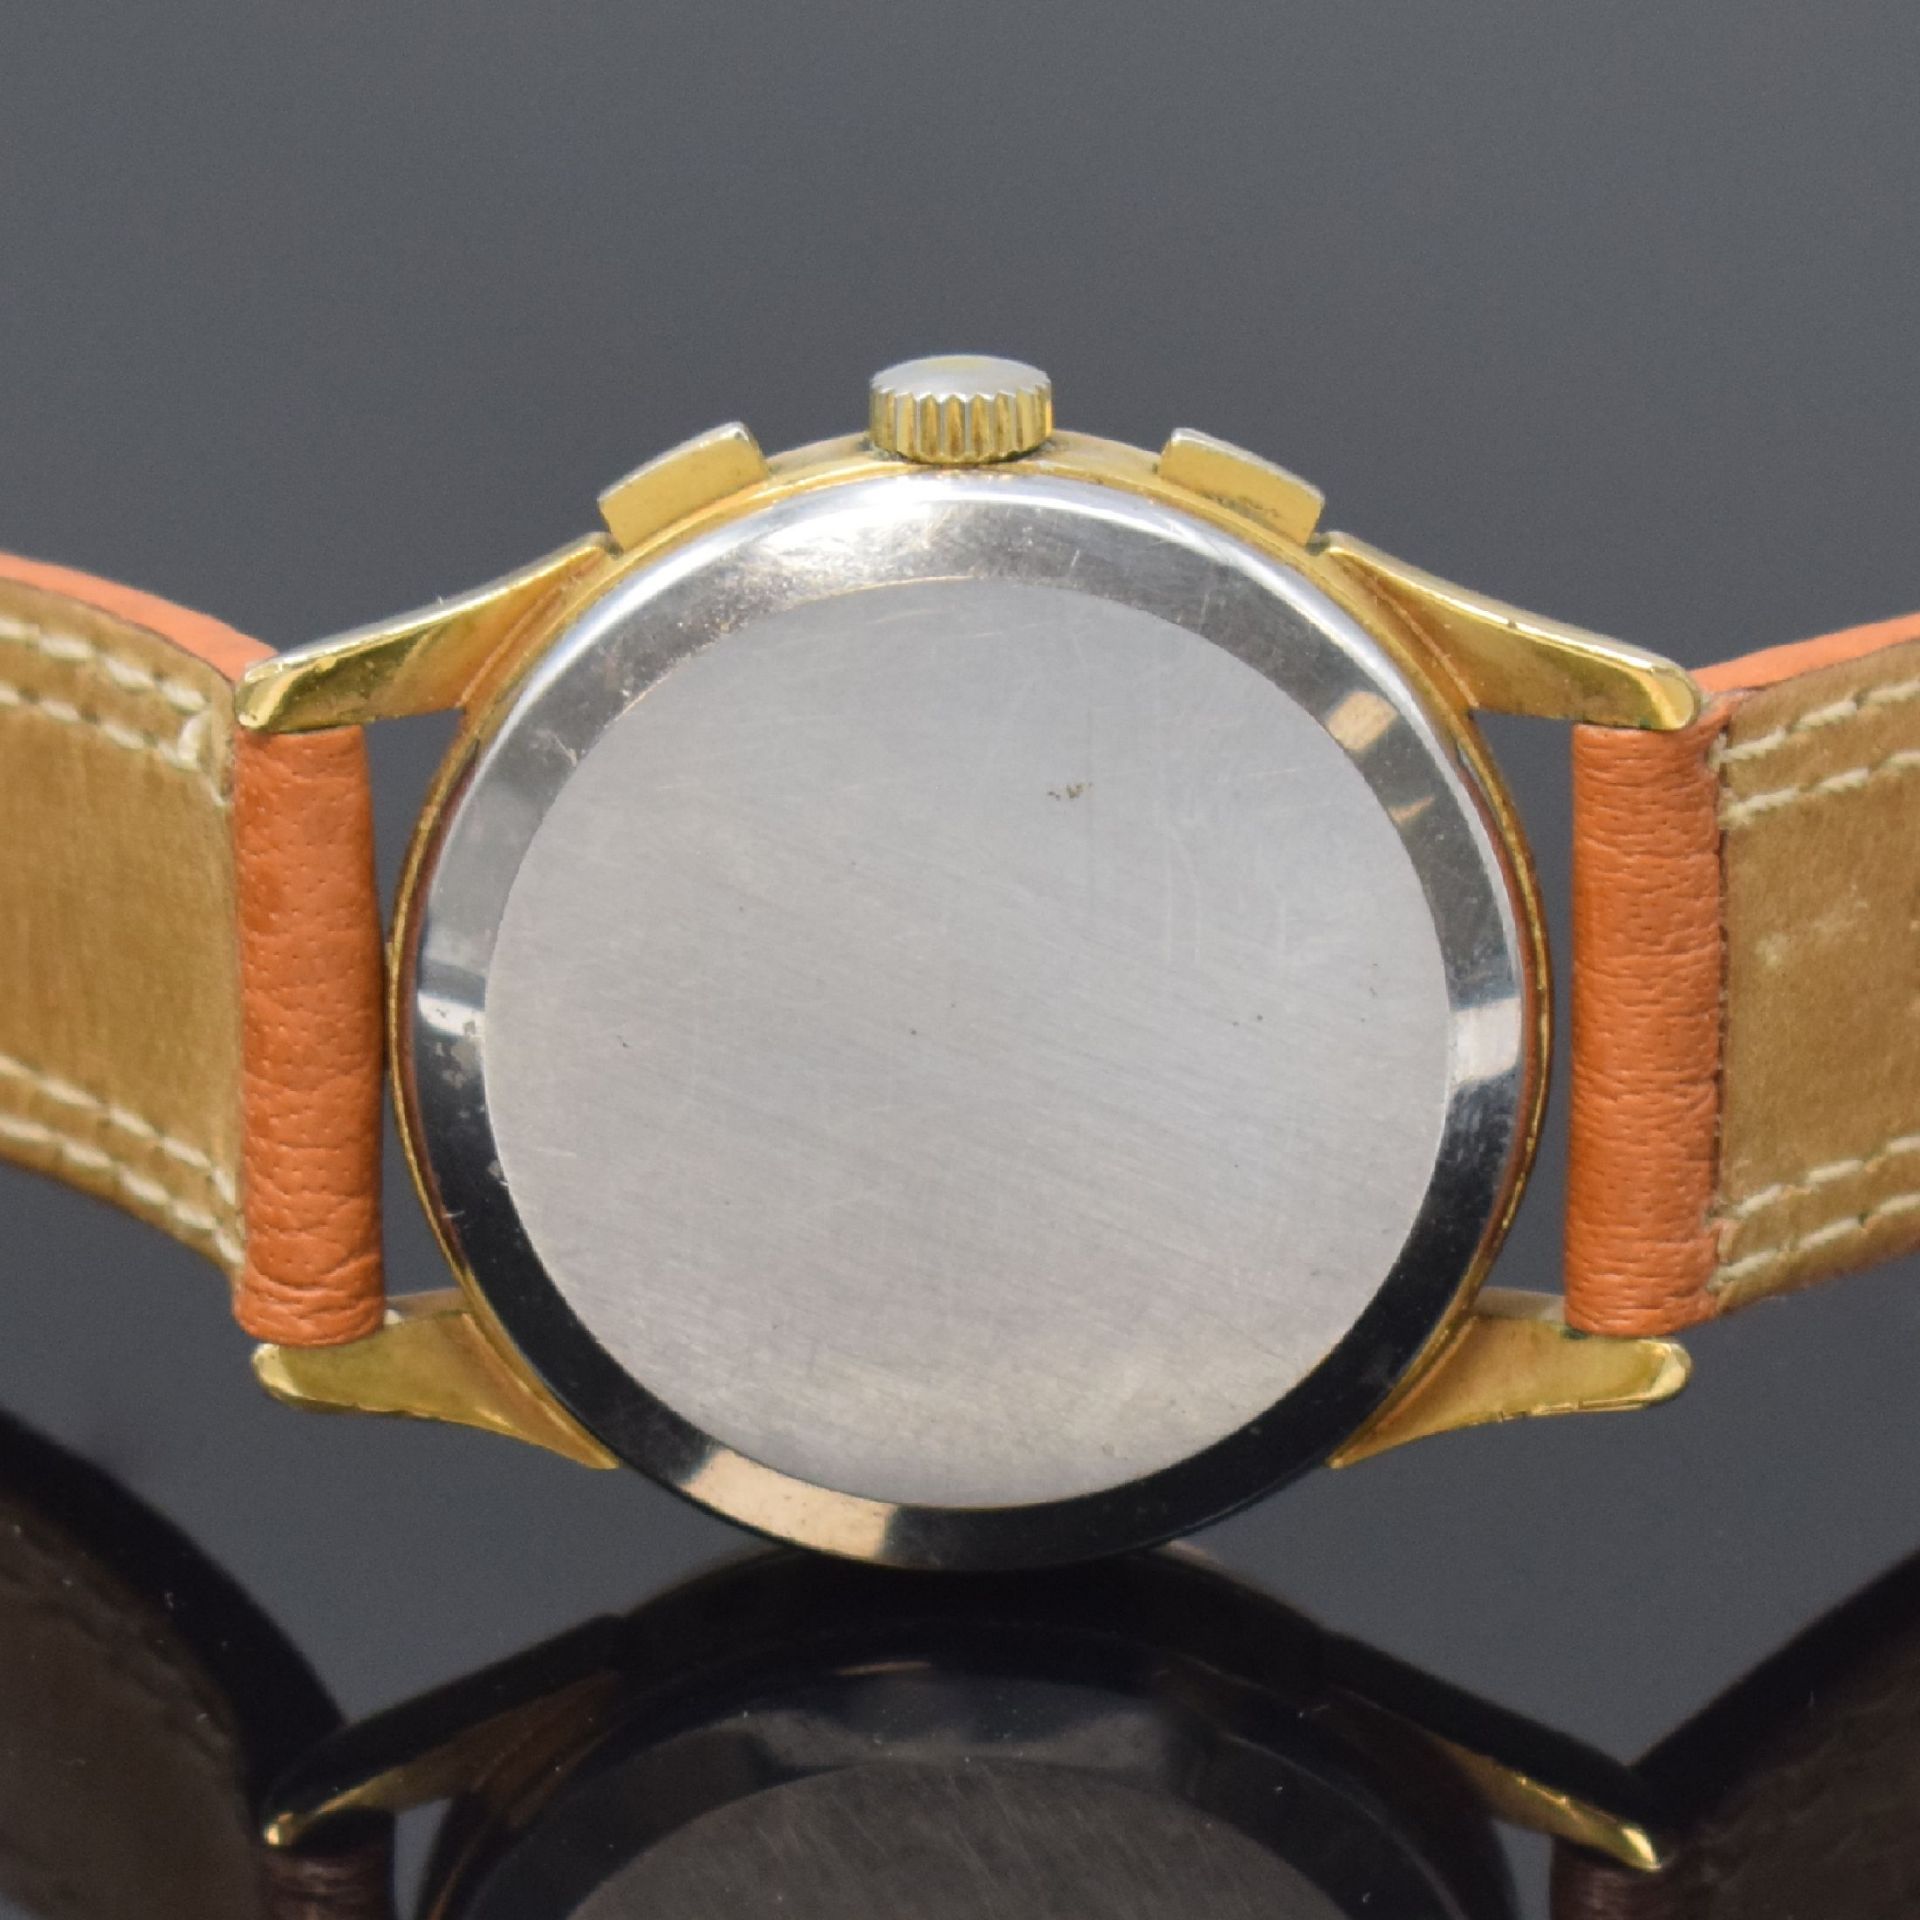 AUBE vergoldeter Schaltradchronograph mit Vollkalender - Bild 5 aus 7